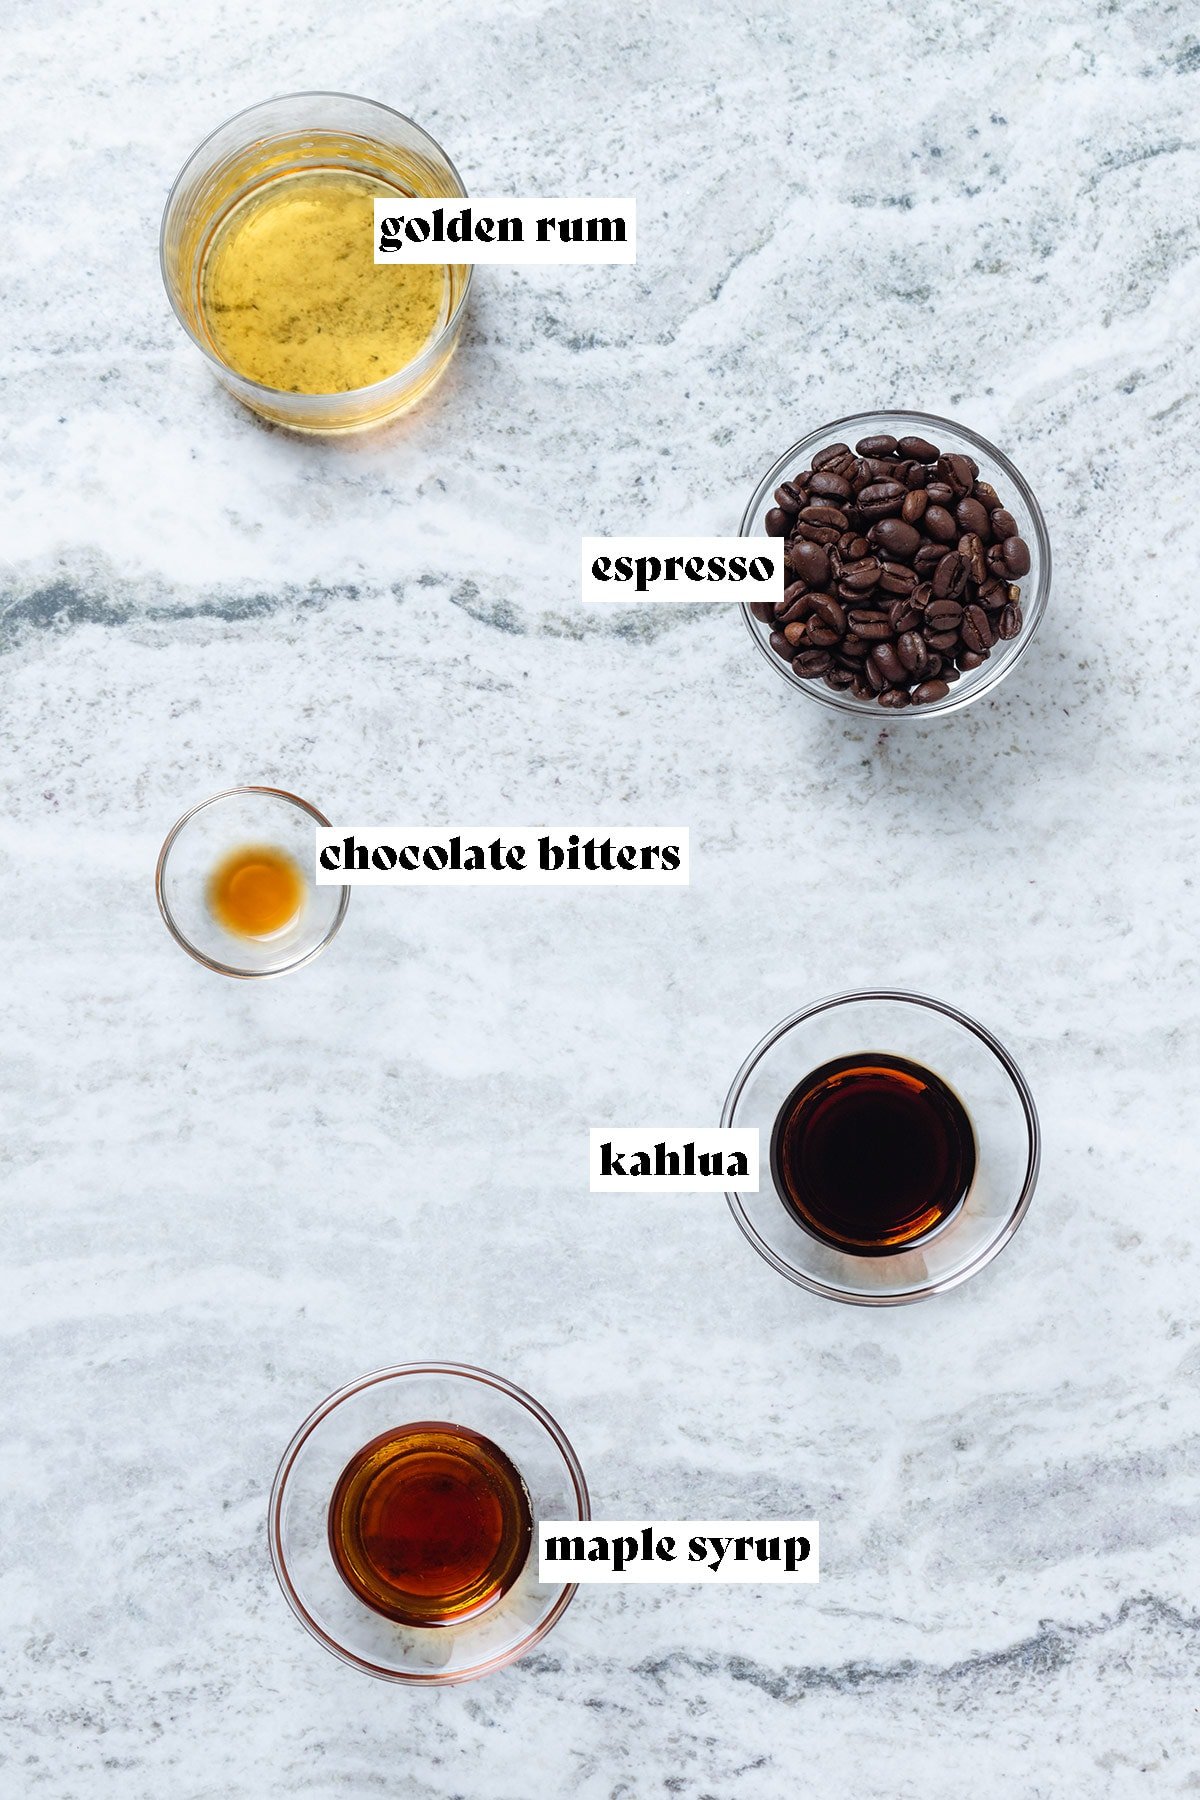 Classic Espresso Martini Recipe (using Rum) ⋆ DelMarValicious Dishes